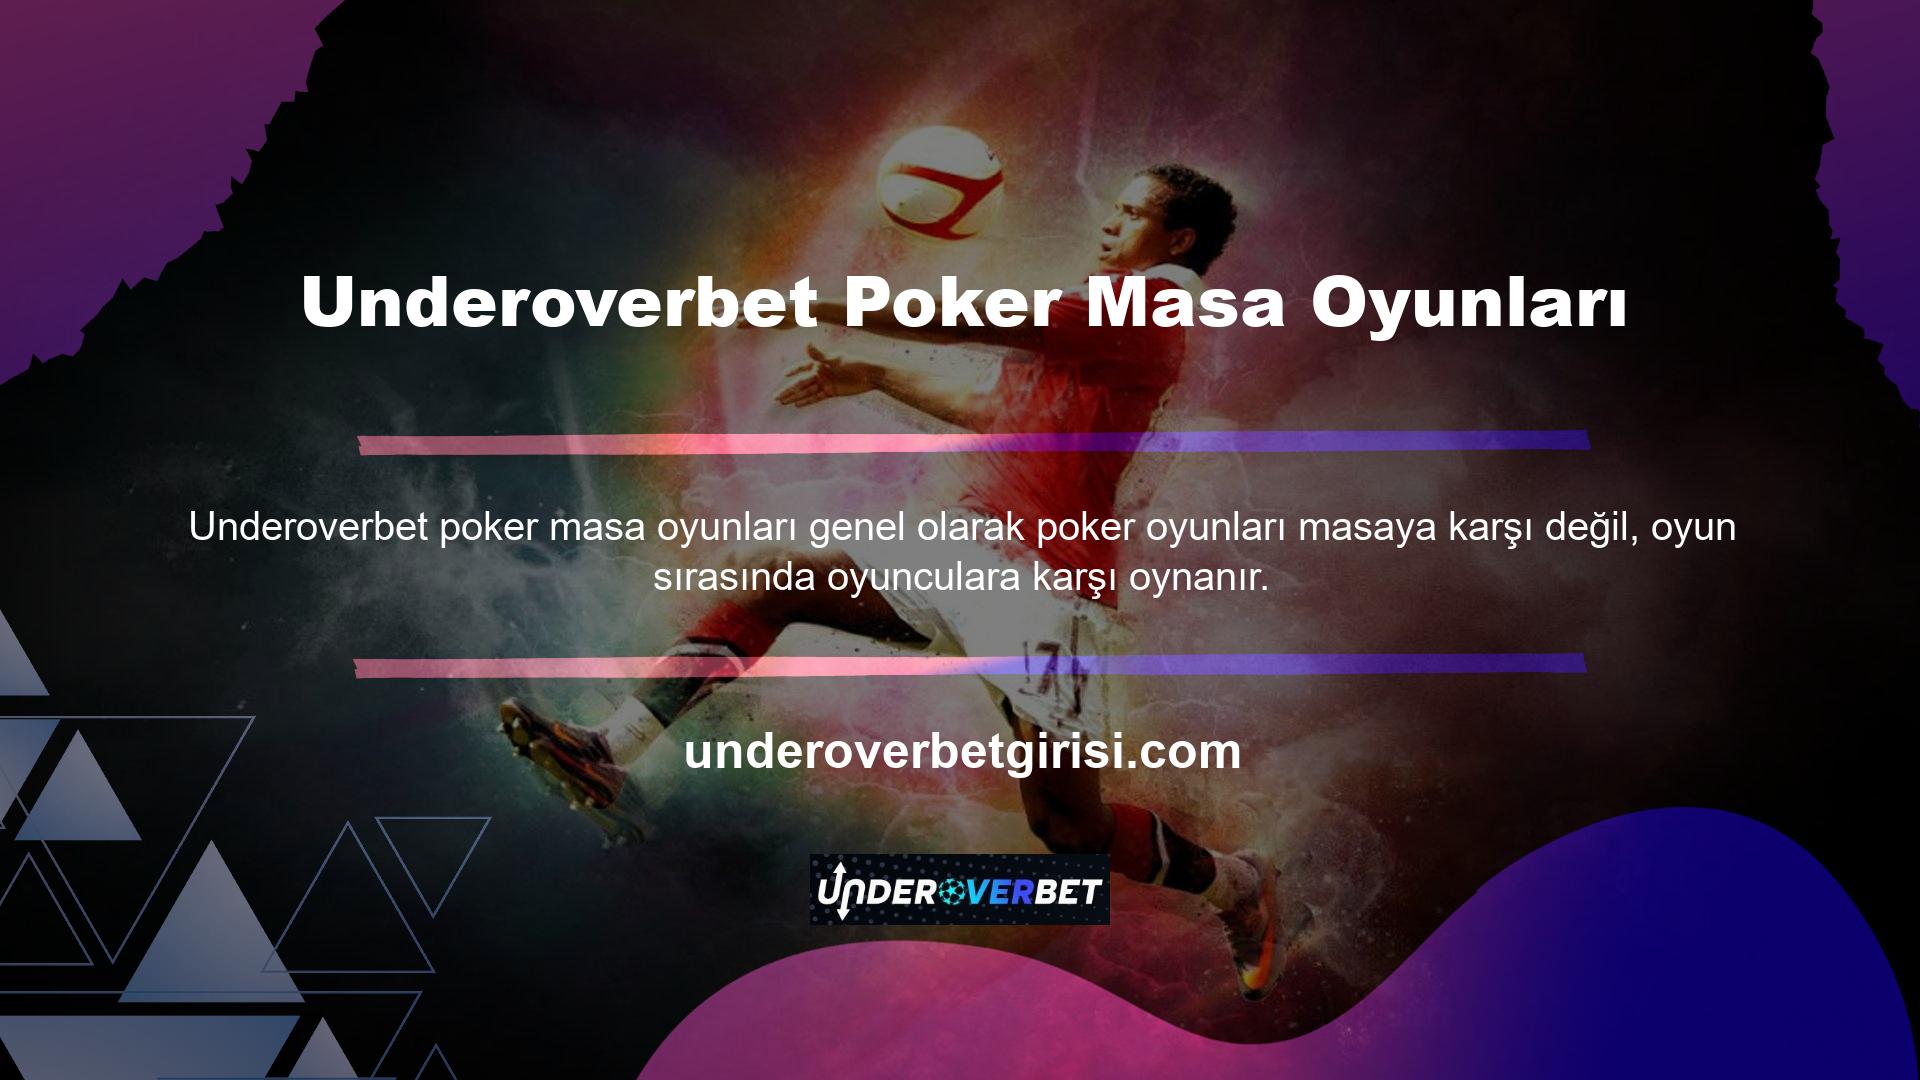 Oyuncuların masaya karşı oynama şansına sahip olduğu Türk pokerinde ise durum farklıdır